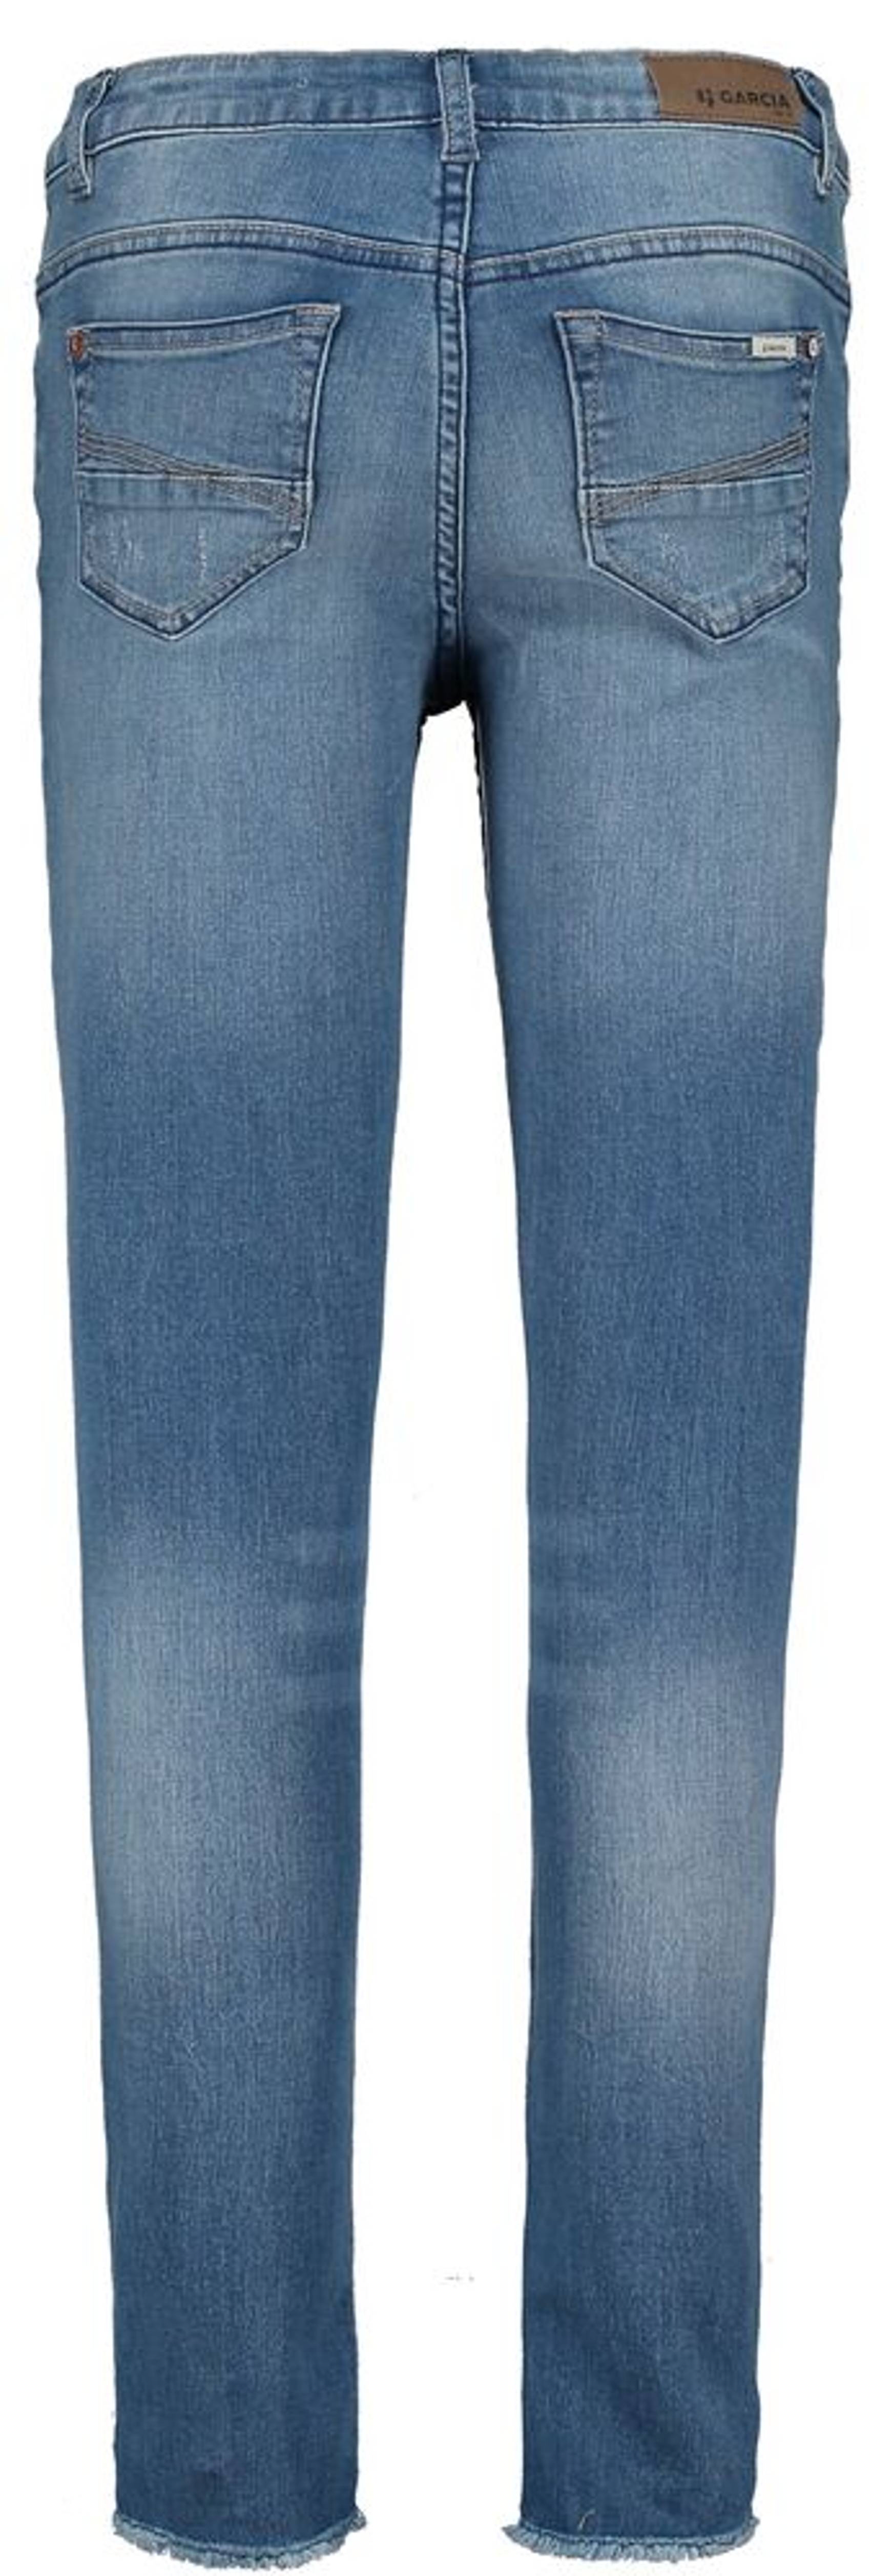 Medium Rianna Jeans Used - 570 Garcia | Superslim